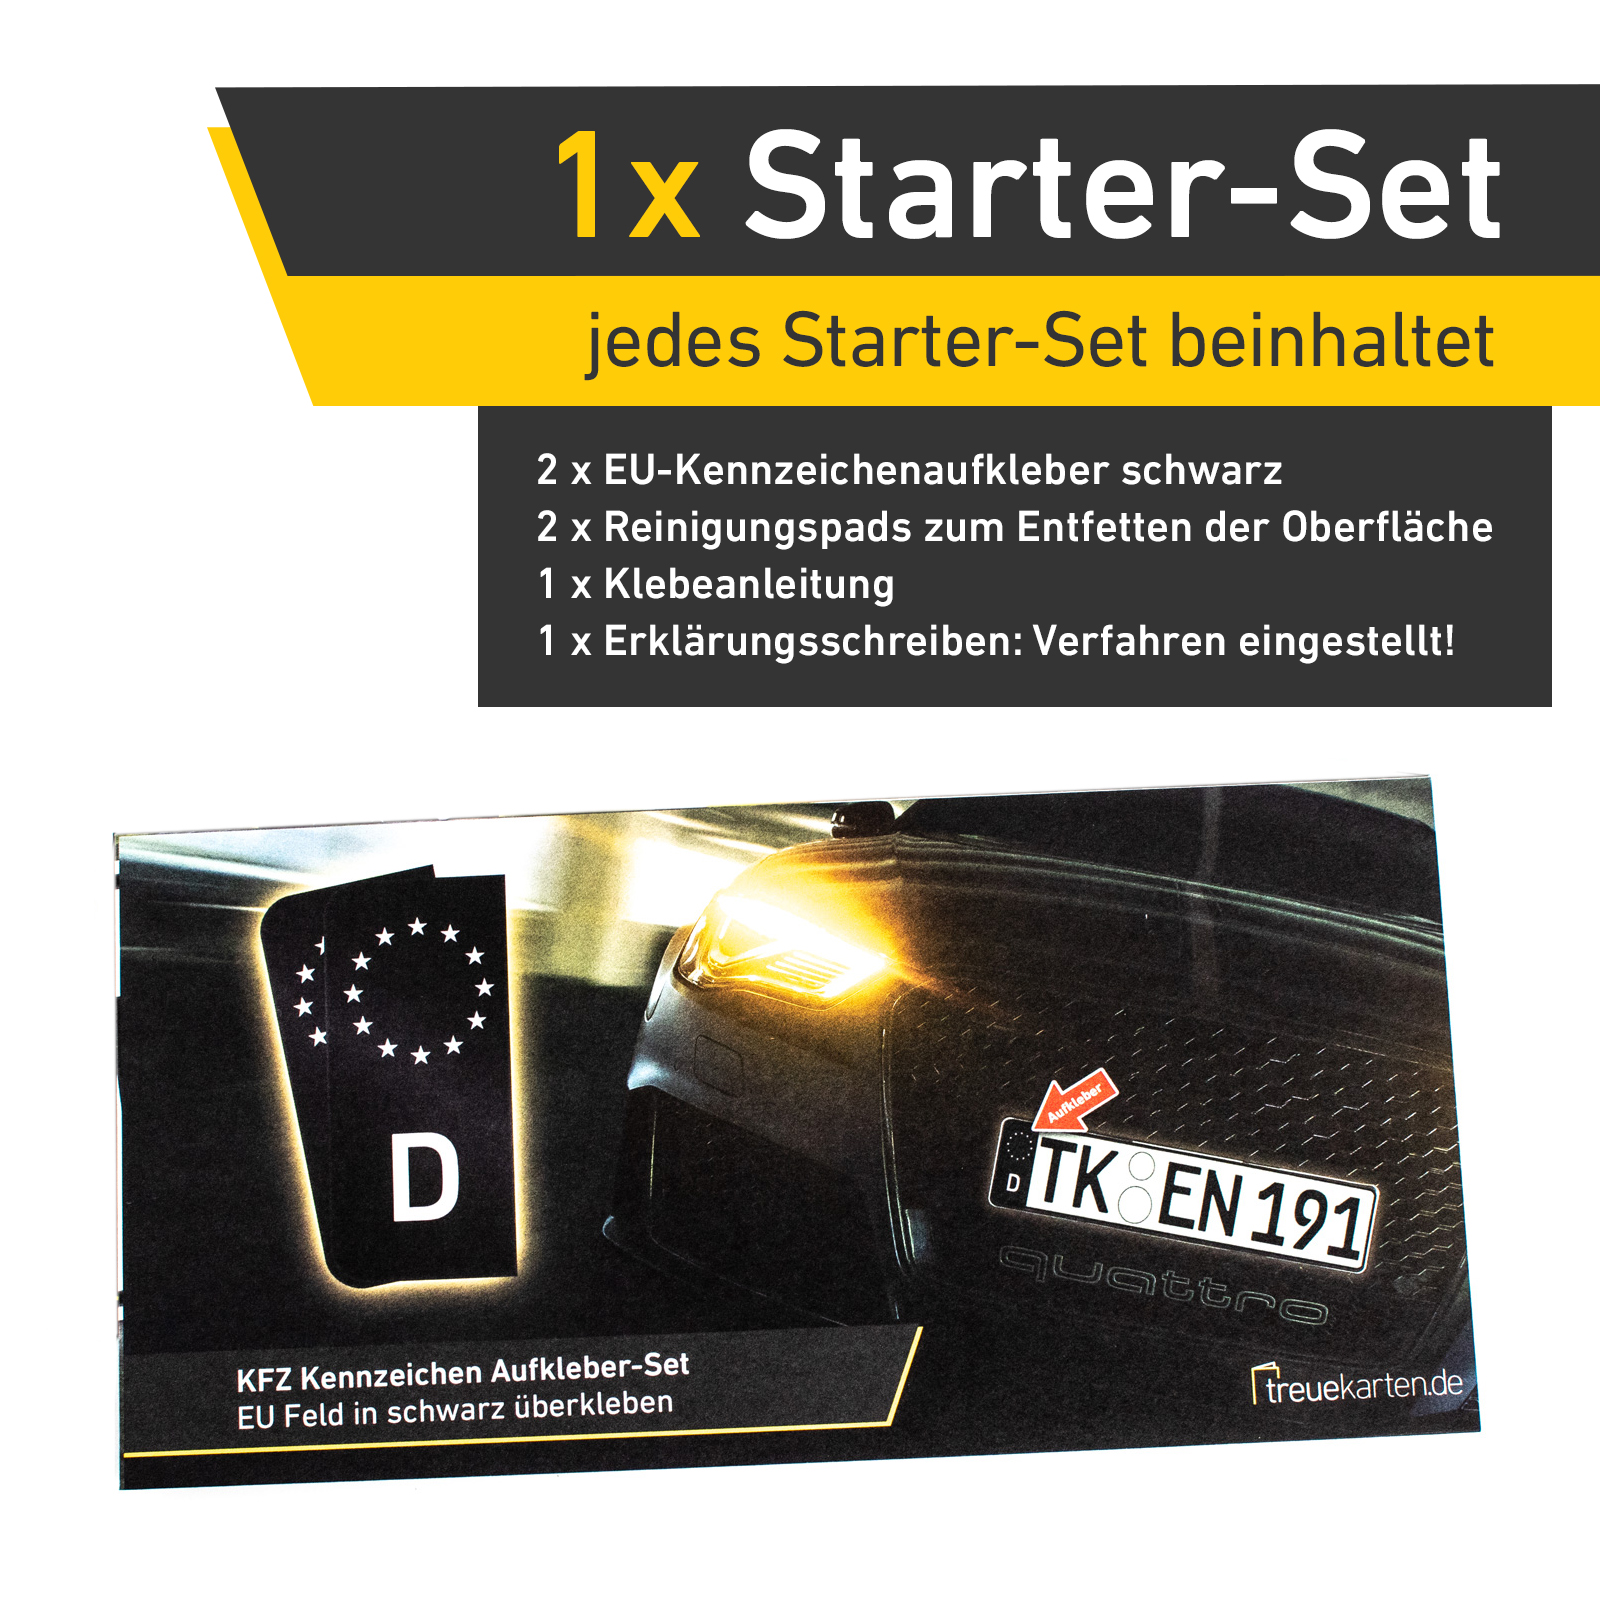 2x Kennzeichen Nummernschild Aufkleber, EU Feld Schwarz, inkl. 1x Starter-Set